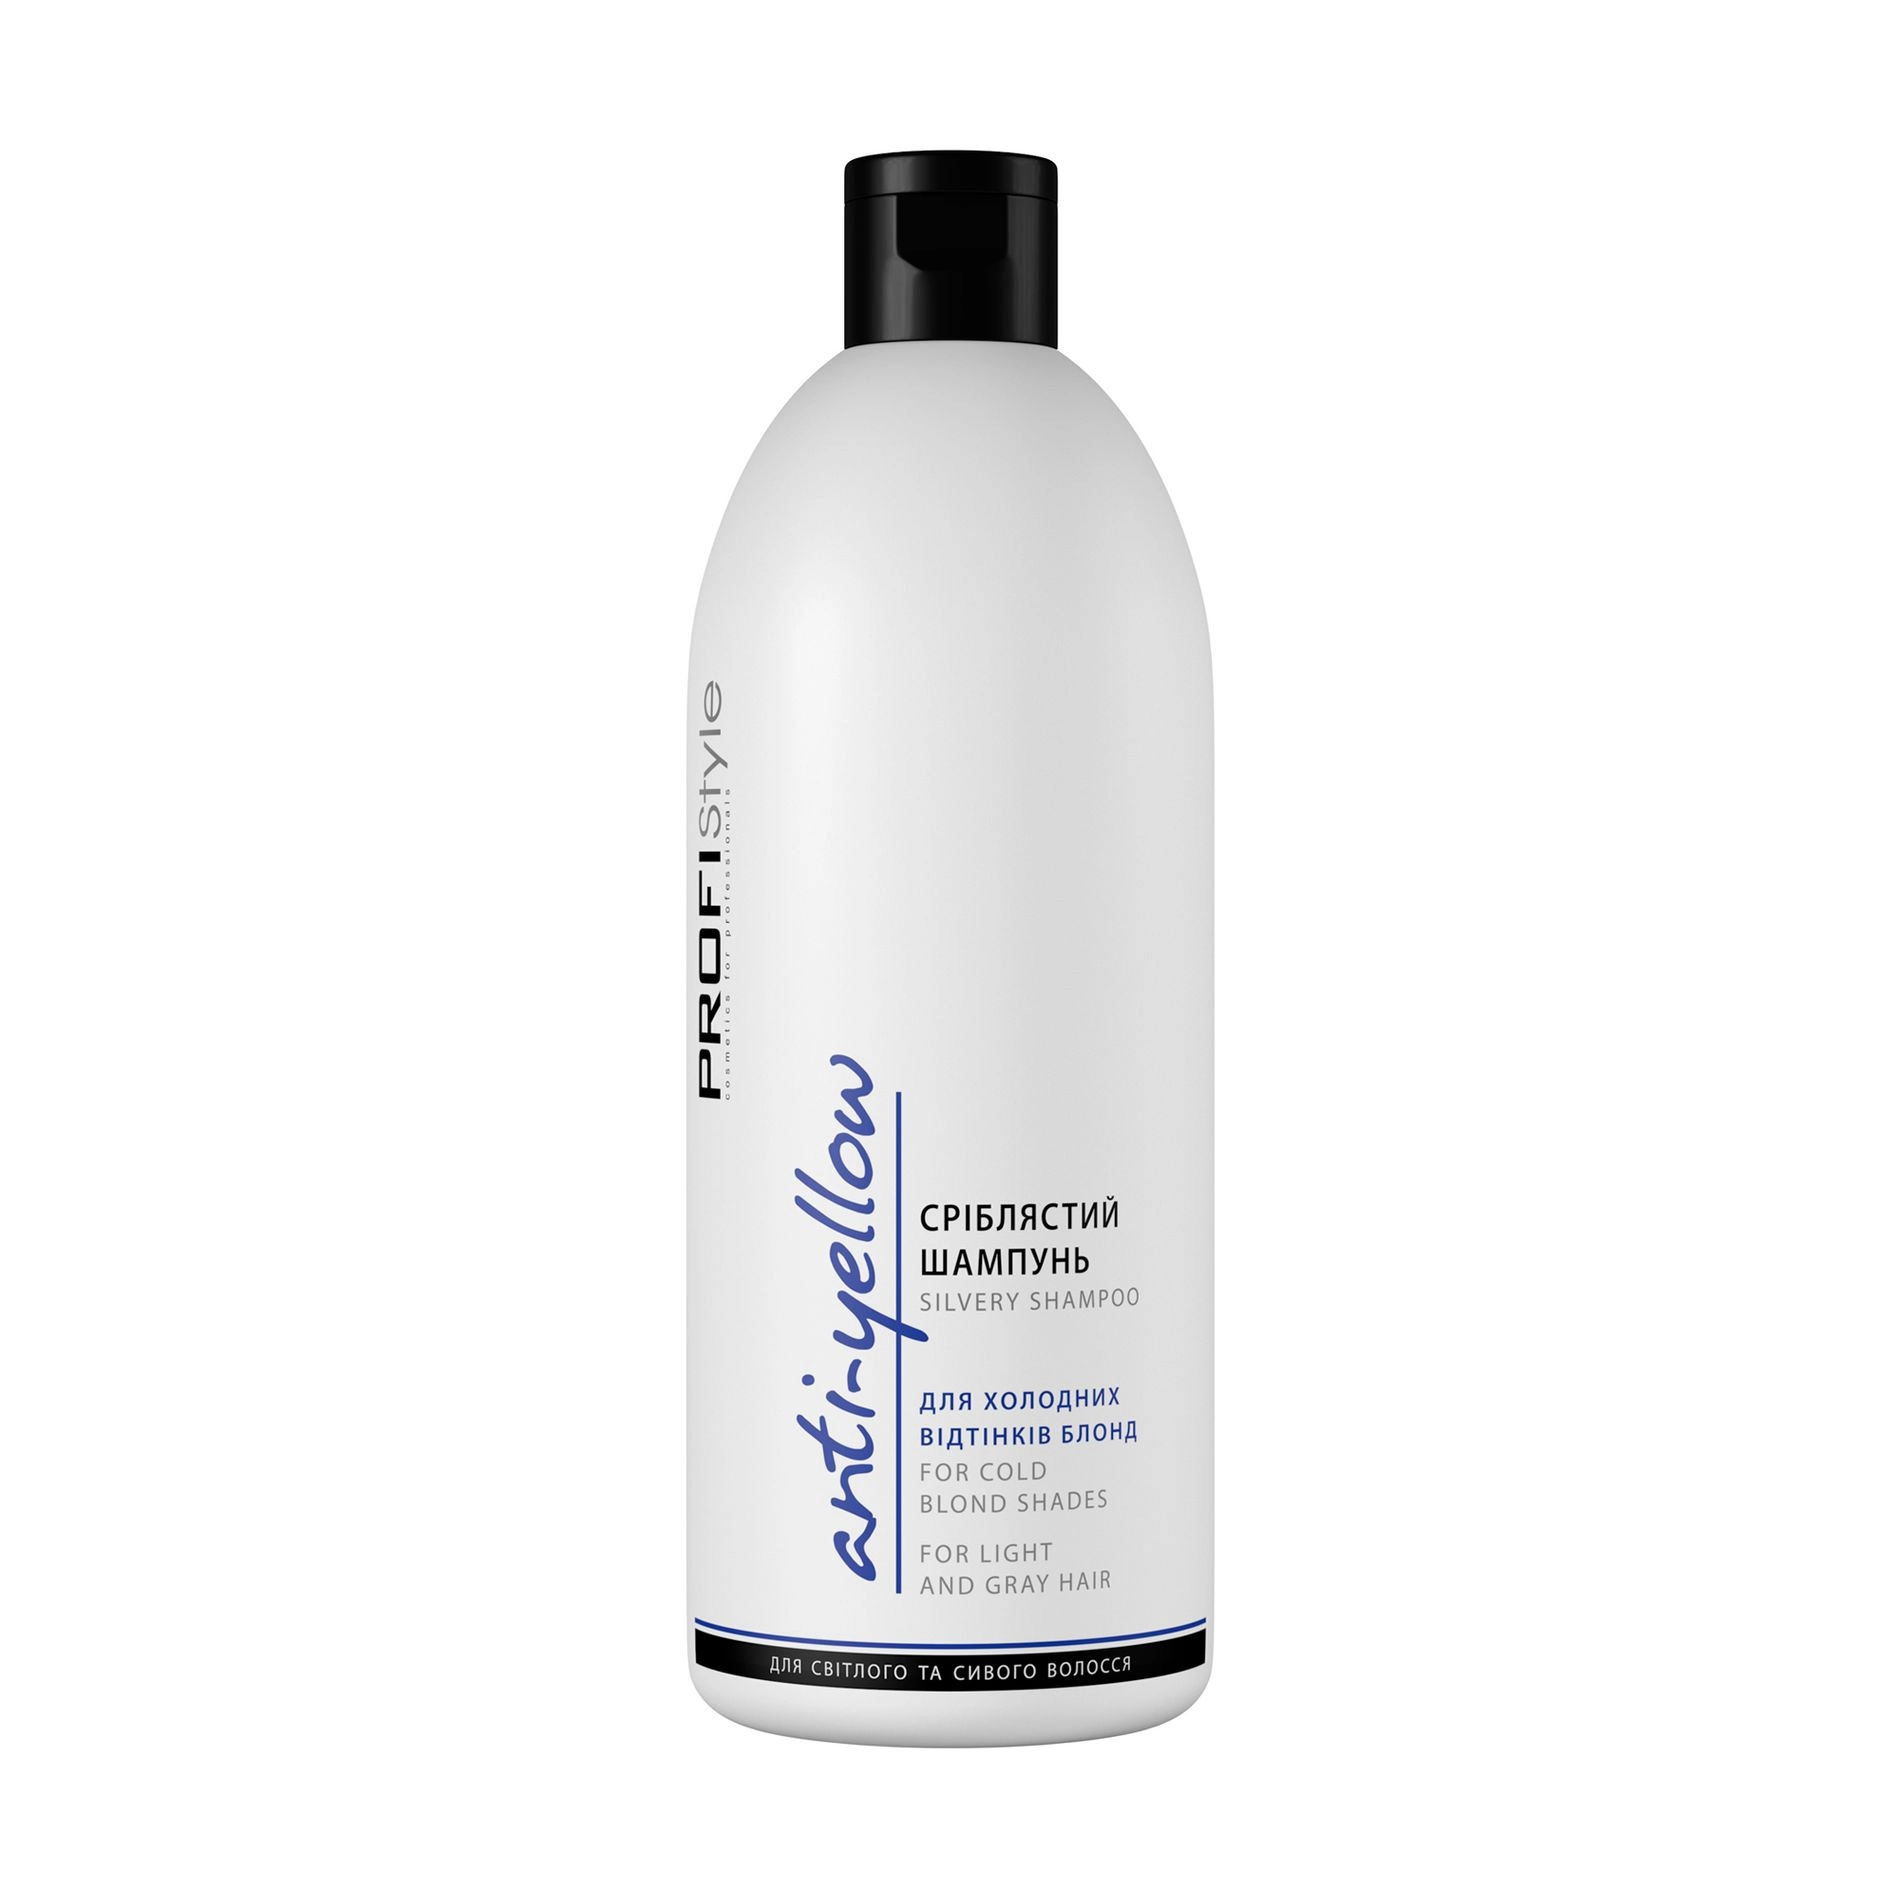 Profi Style Сріблястий шампунь Anti-Yellow Shampoo анти-жовтий ефект для холодних відтінків блонд, 500 мл - фото N1